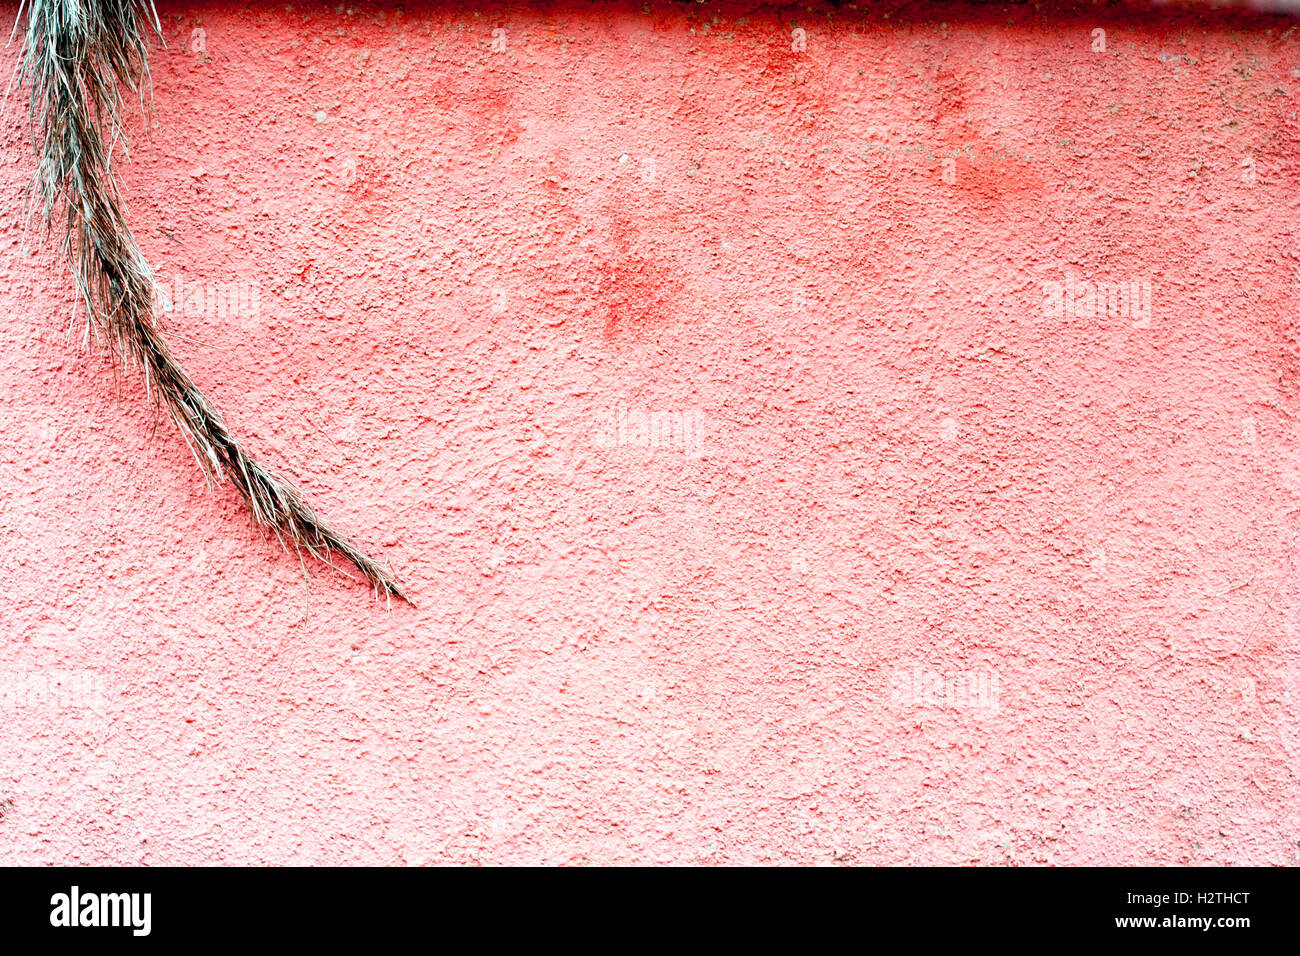 Meno è più : shot minimalista di vegetazione asciutta contro un colore rossastro superficie ruvida/parete. Foto Stock